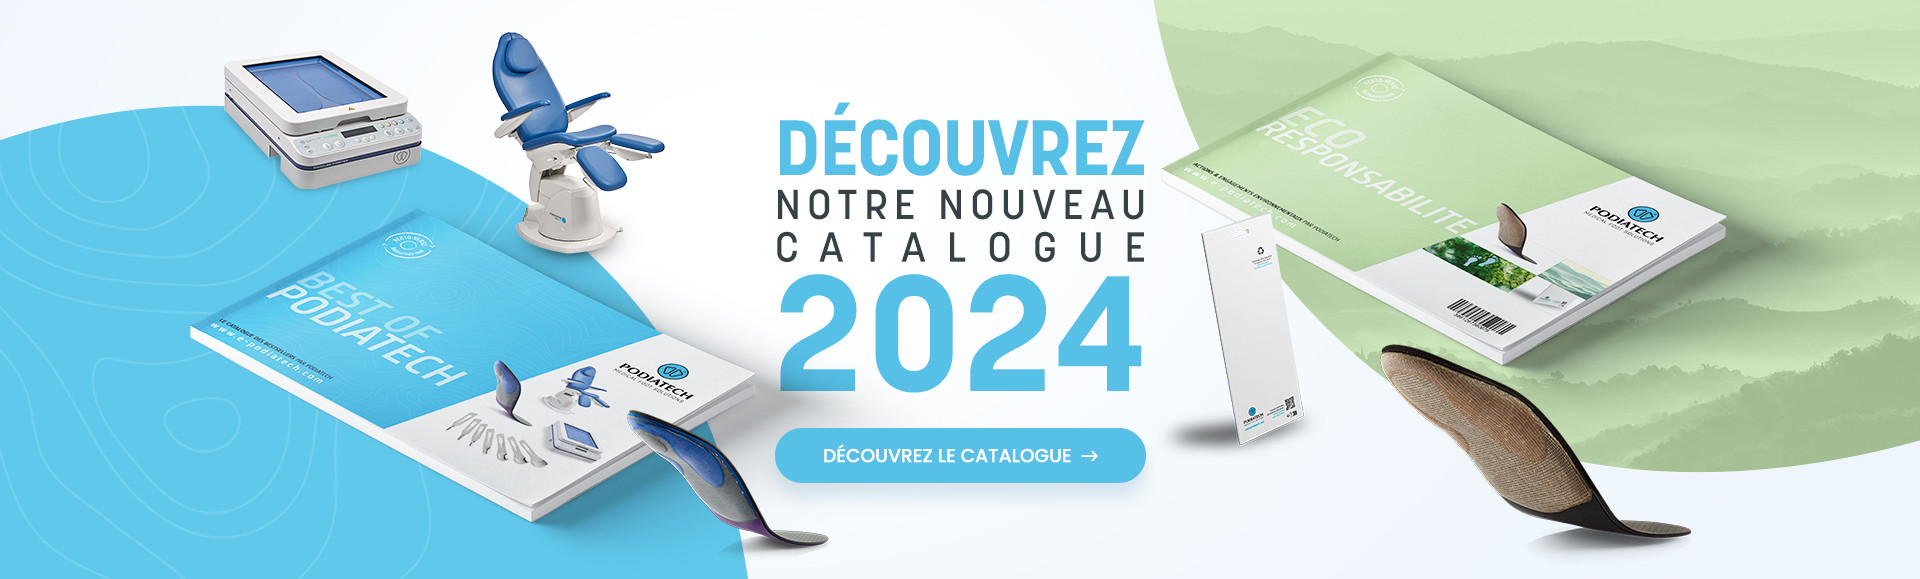 Découvrez notre nouveau catalogue 2024 !